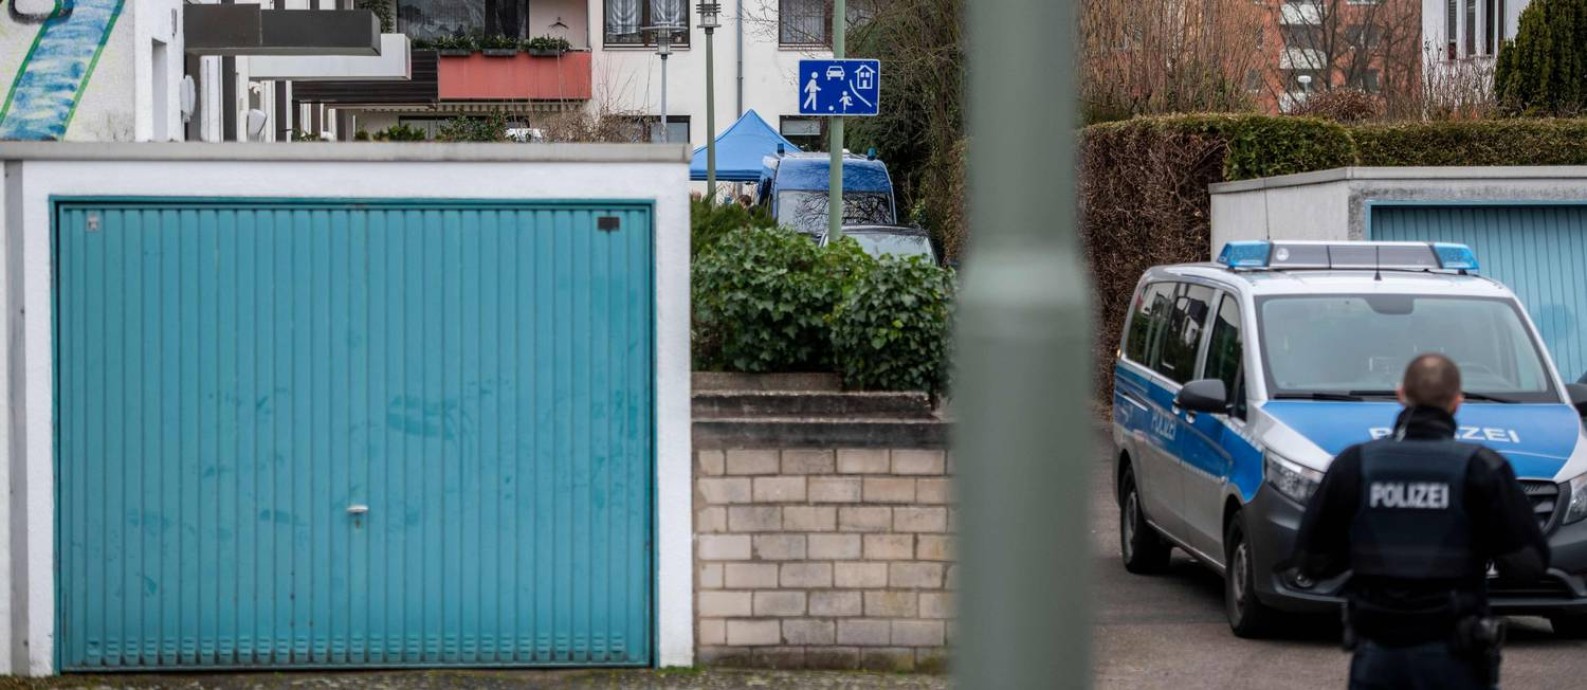 Políciais vigiam a casa do suspeito de dois ataques a bares na Alemanha, que deixaram nove mortos Foto: THOMAS LOHNES / AFP